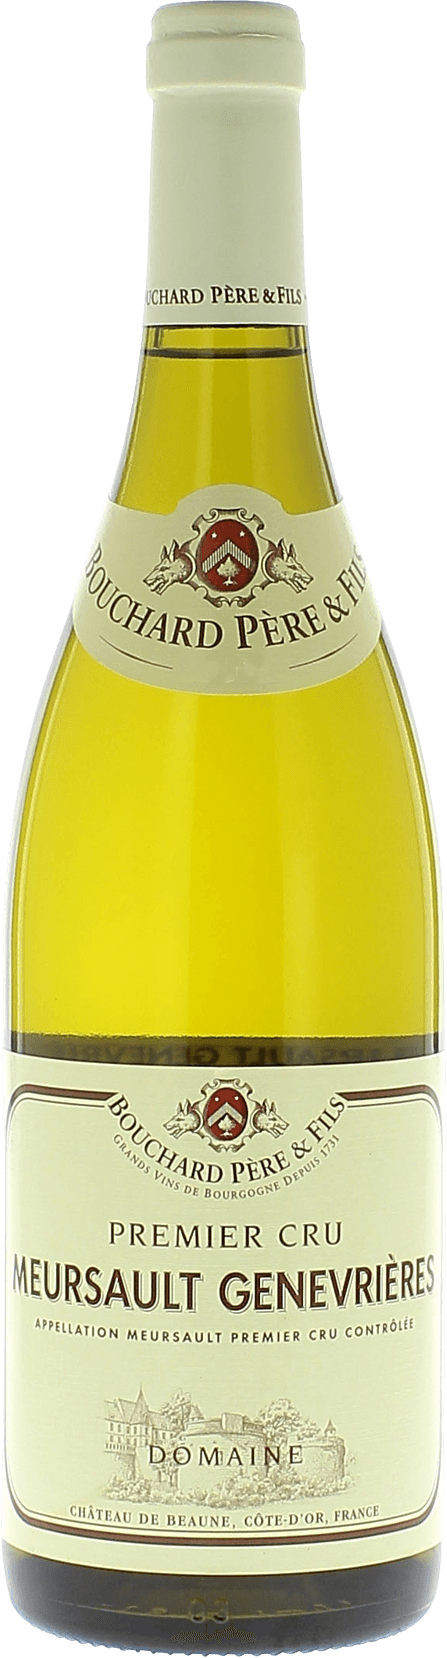 Meursault 1er cru genevrires 2017  BOUCHARD Pre et fils, Bourgogne blanc